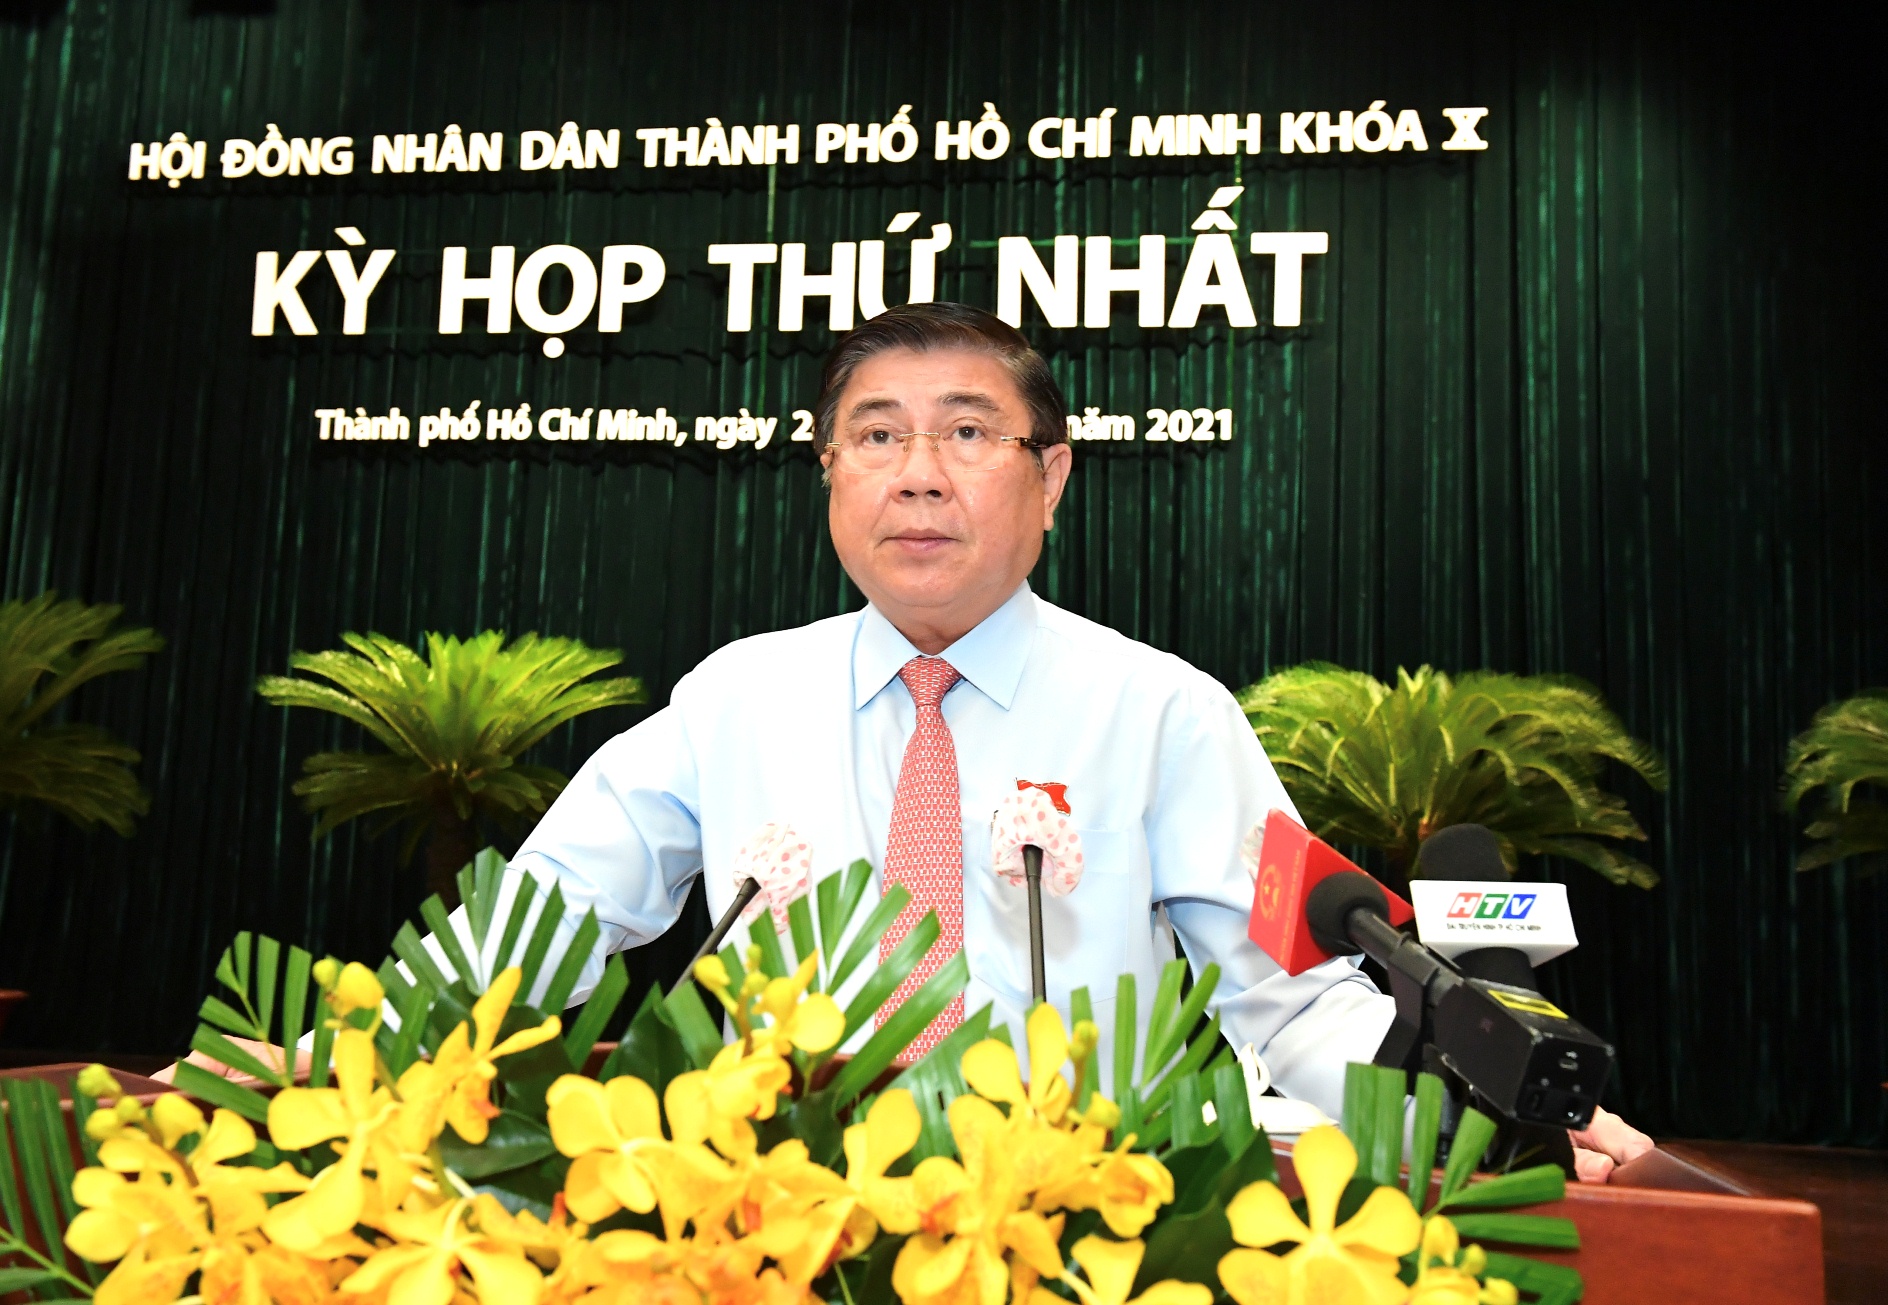 Một năm trước, ngày 24/6/2021, ông Nguyễn Thành Phong tái đắc cử Chủ tịch TP. HCM. Hai tháng sau, ông về làm Phó ban KTTW (ảnh: chinhphu.vn)).
